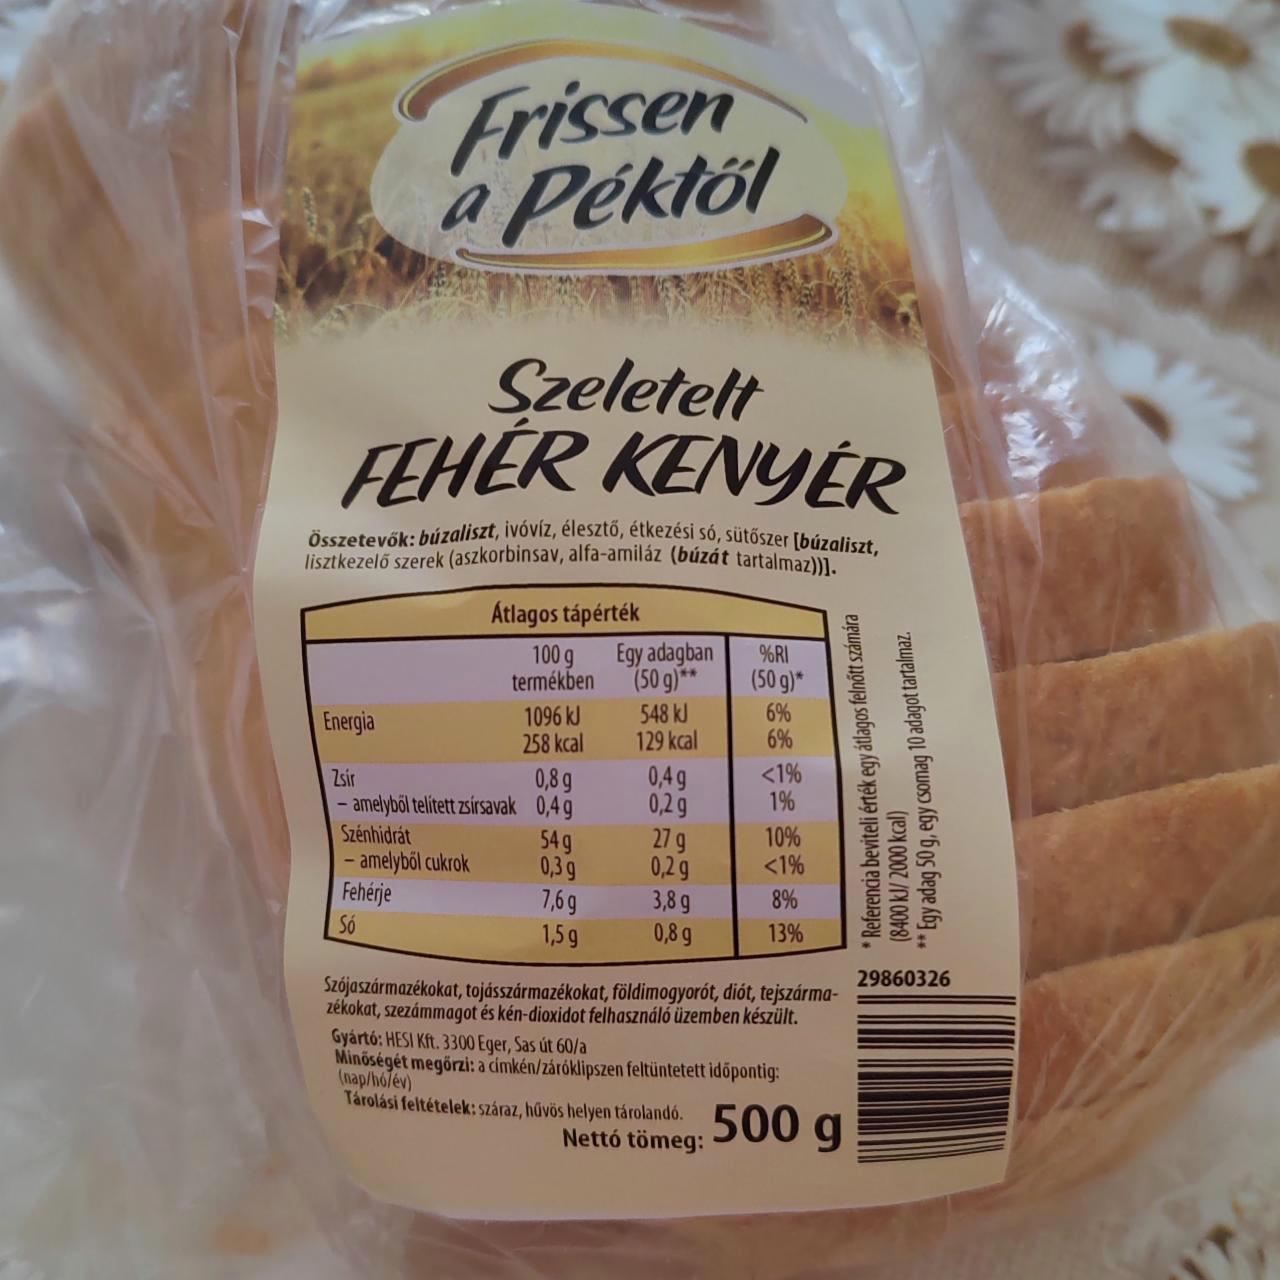 Képek - Szeletelt fehér kenyér Frissen a péktől